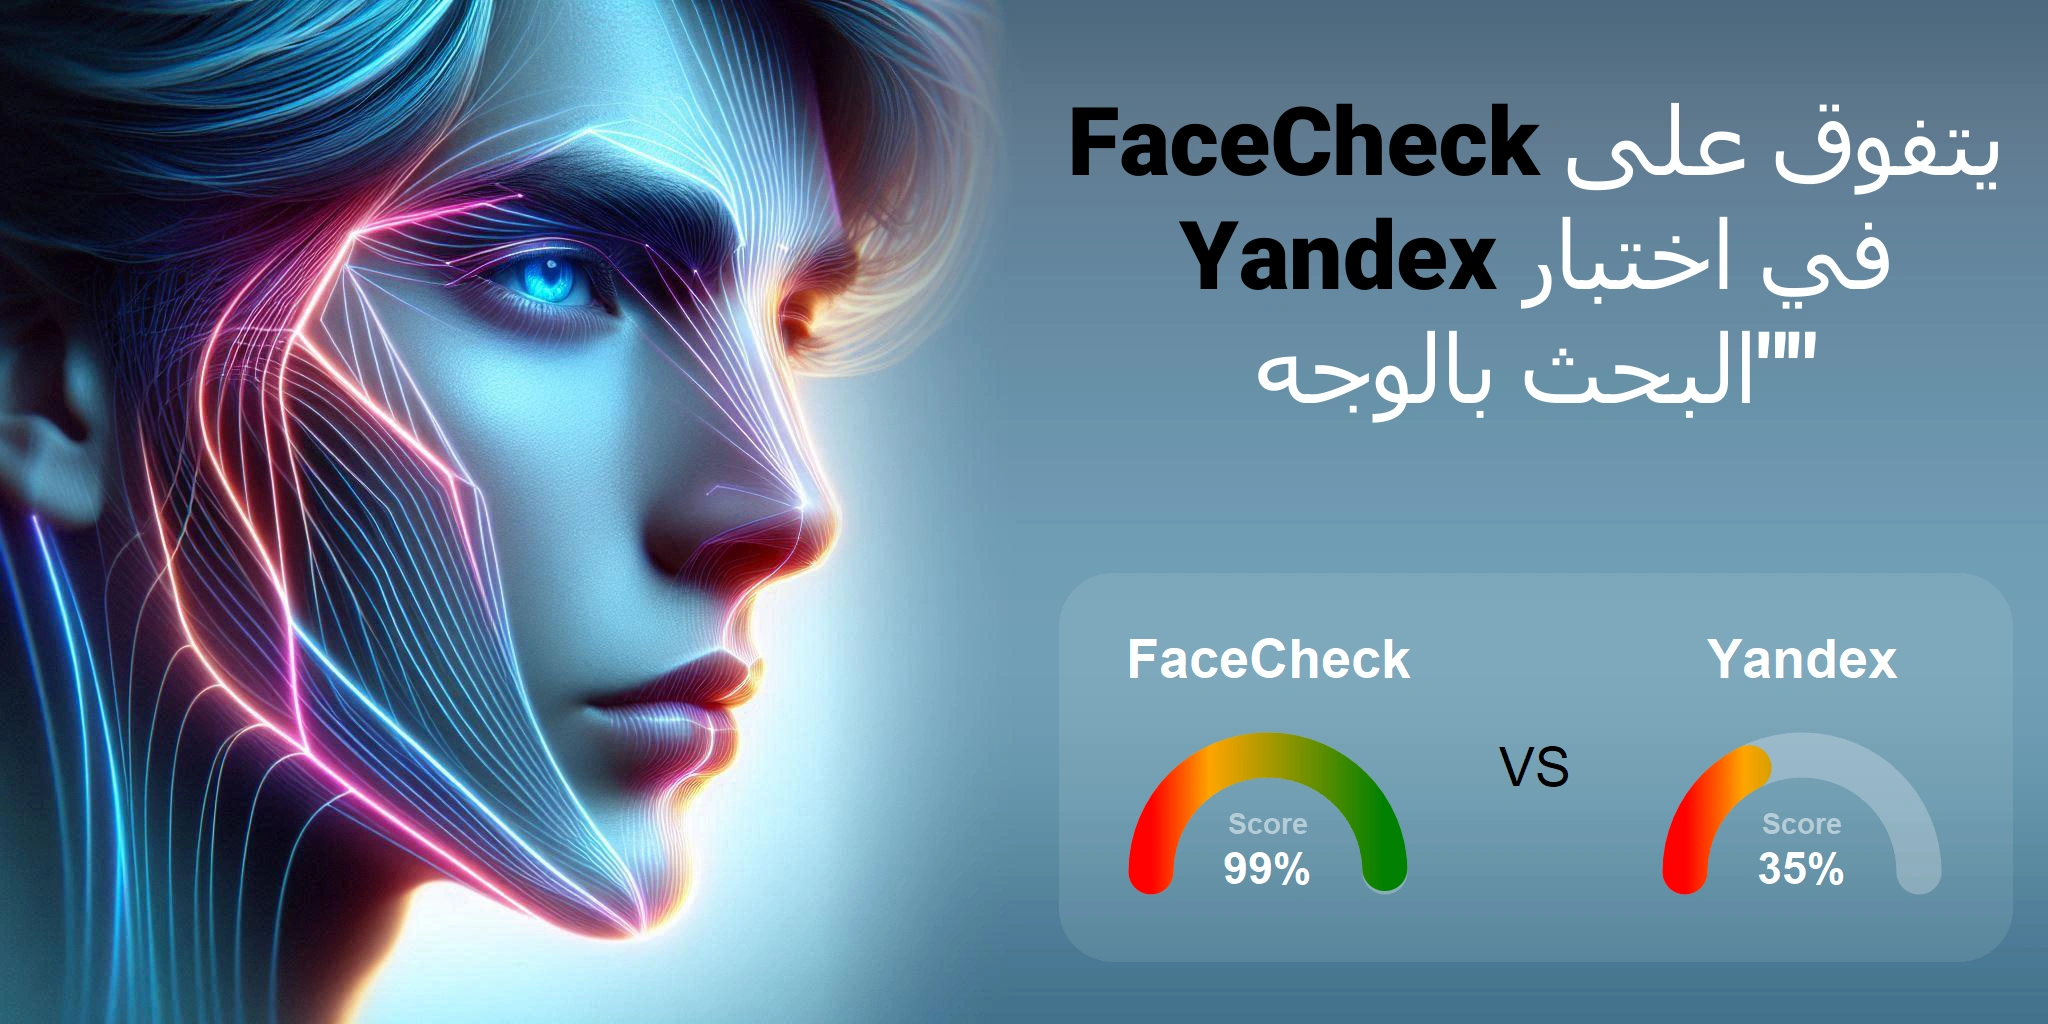 ما هو الأفضل للبحث بالوجه: <br>FaceCheck أو Yandex؟